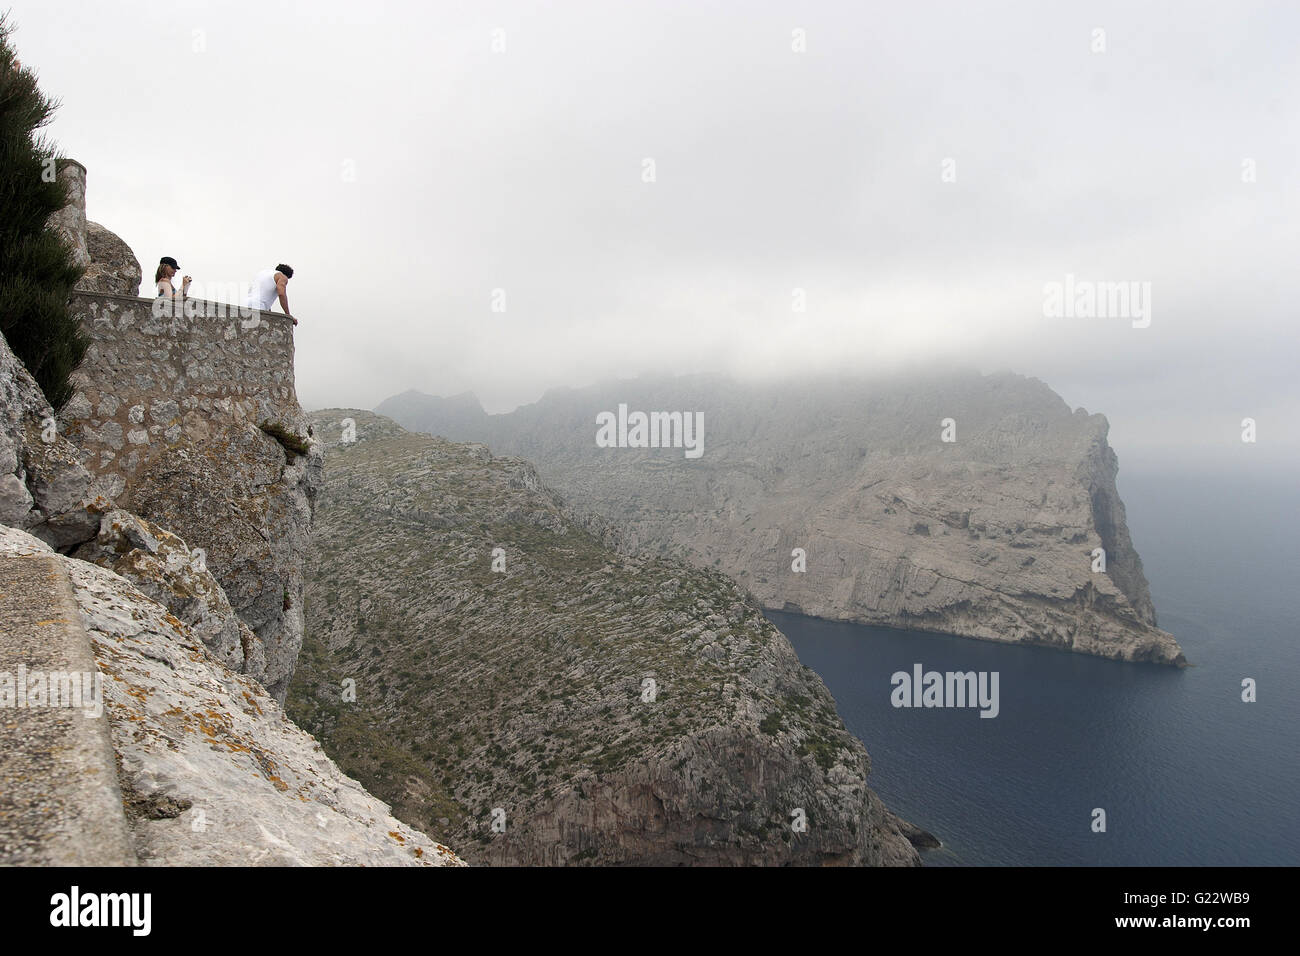 Un moody immagine della scogliera di Cap de Formentor con turisti guardando giù, Palma de Mallorca, Spagna, Mare, turismo, vacanze Foto Stock